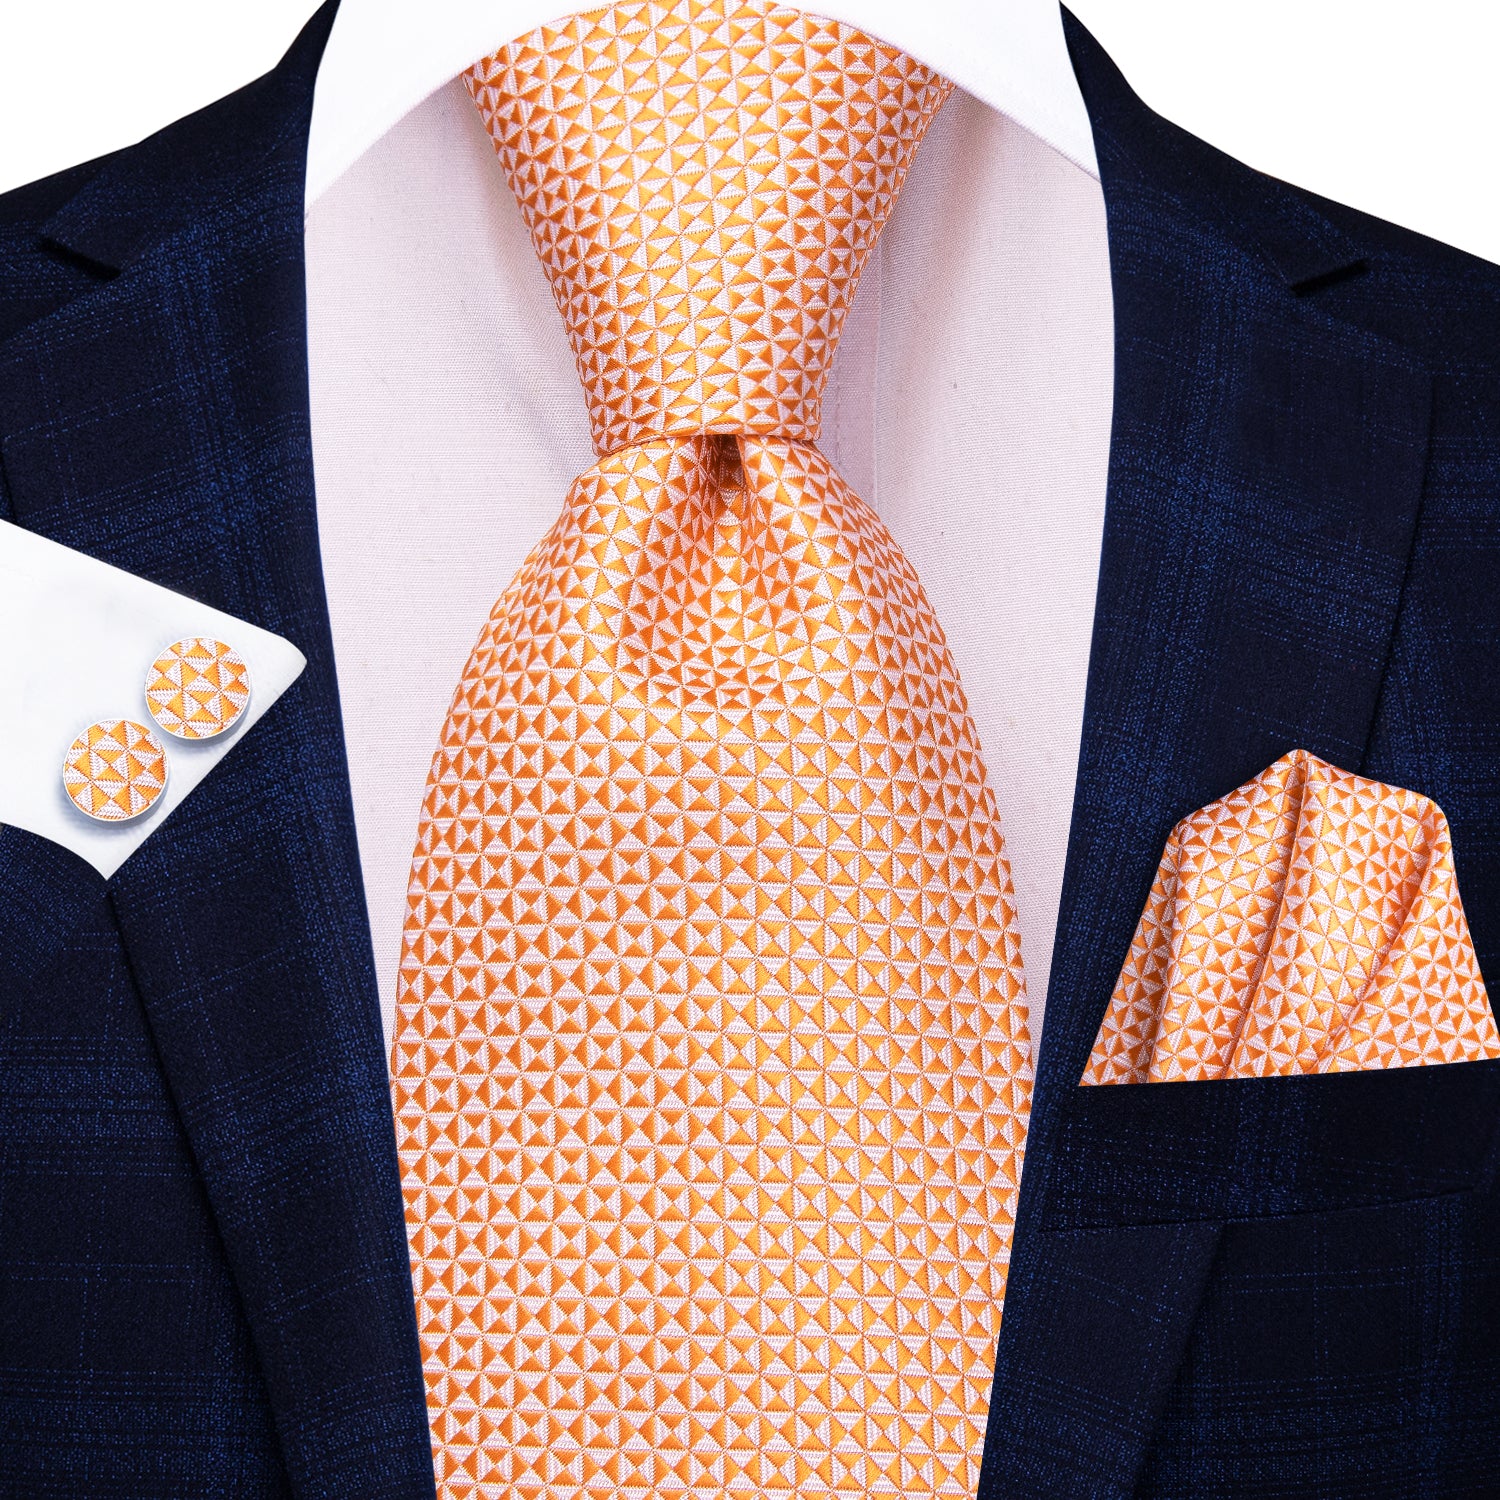 Hi-Tie Orange Novelty Men's Tie Pocket Square Cufflinks Set